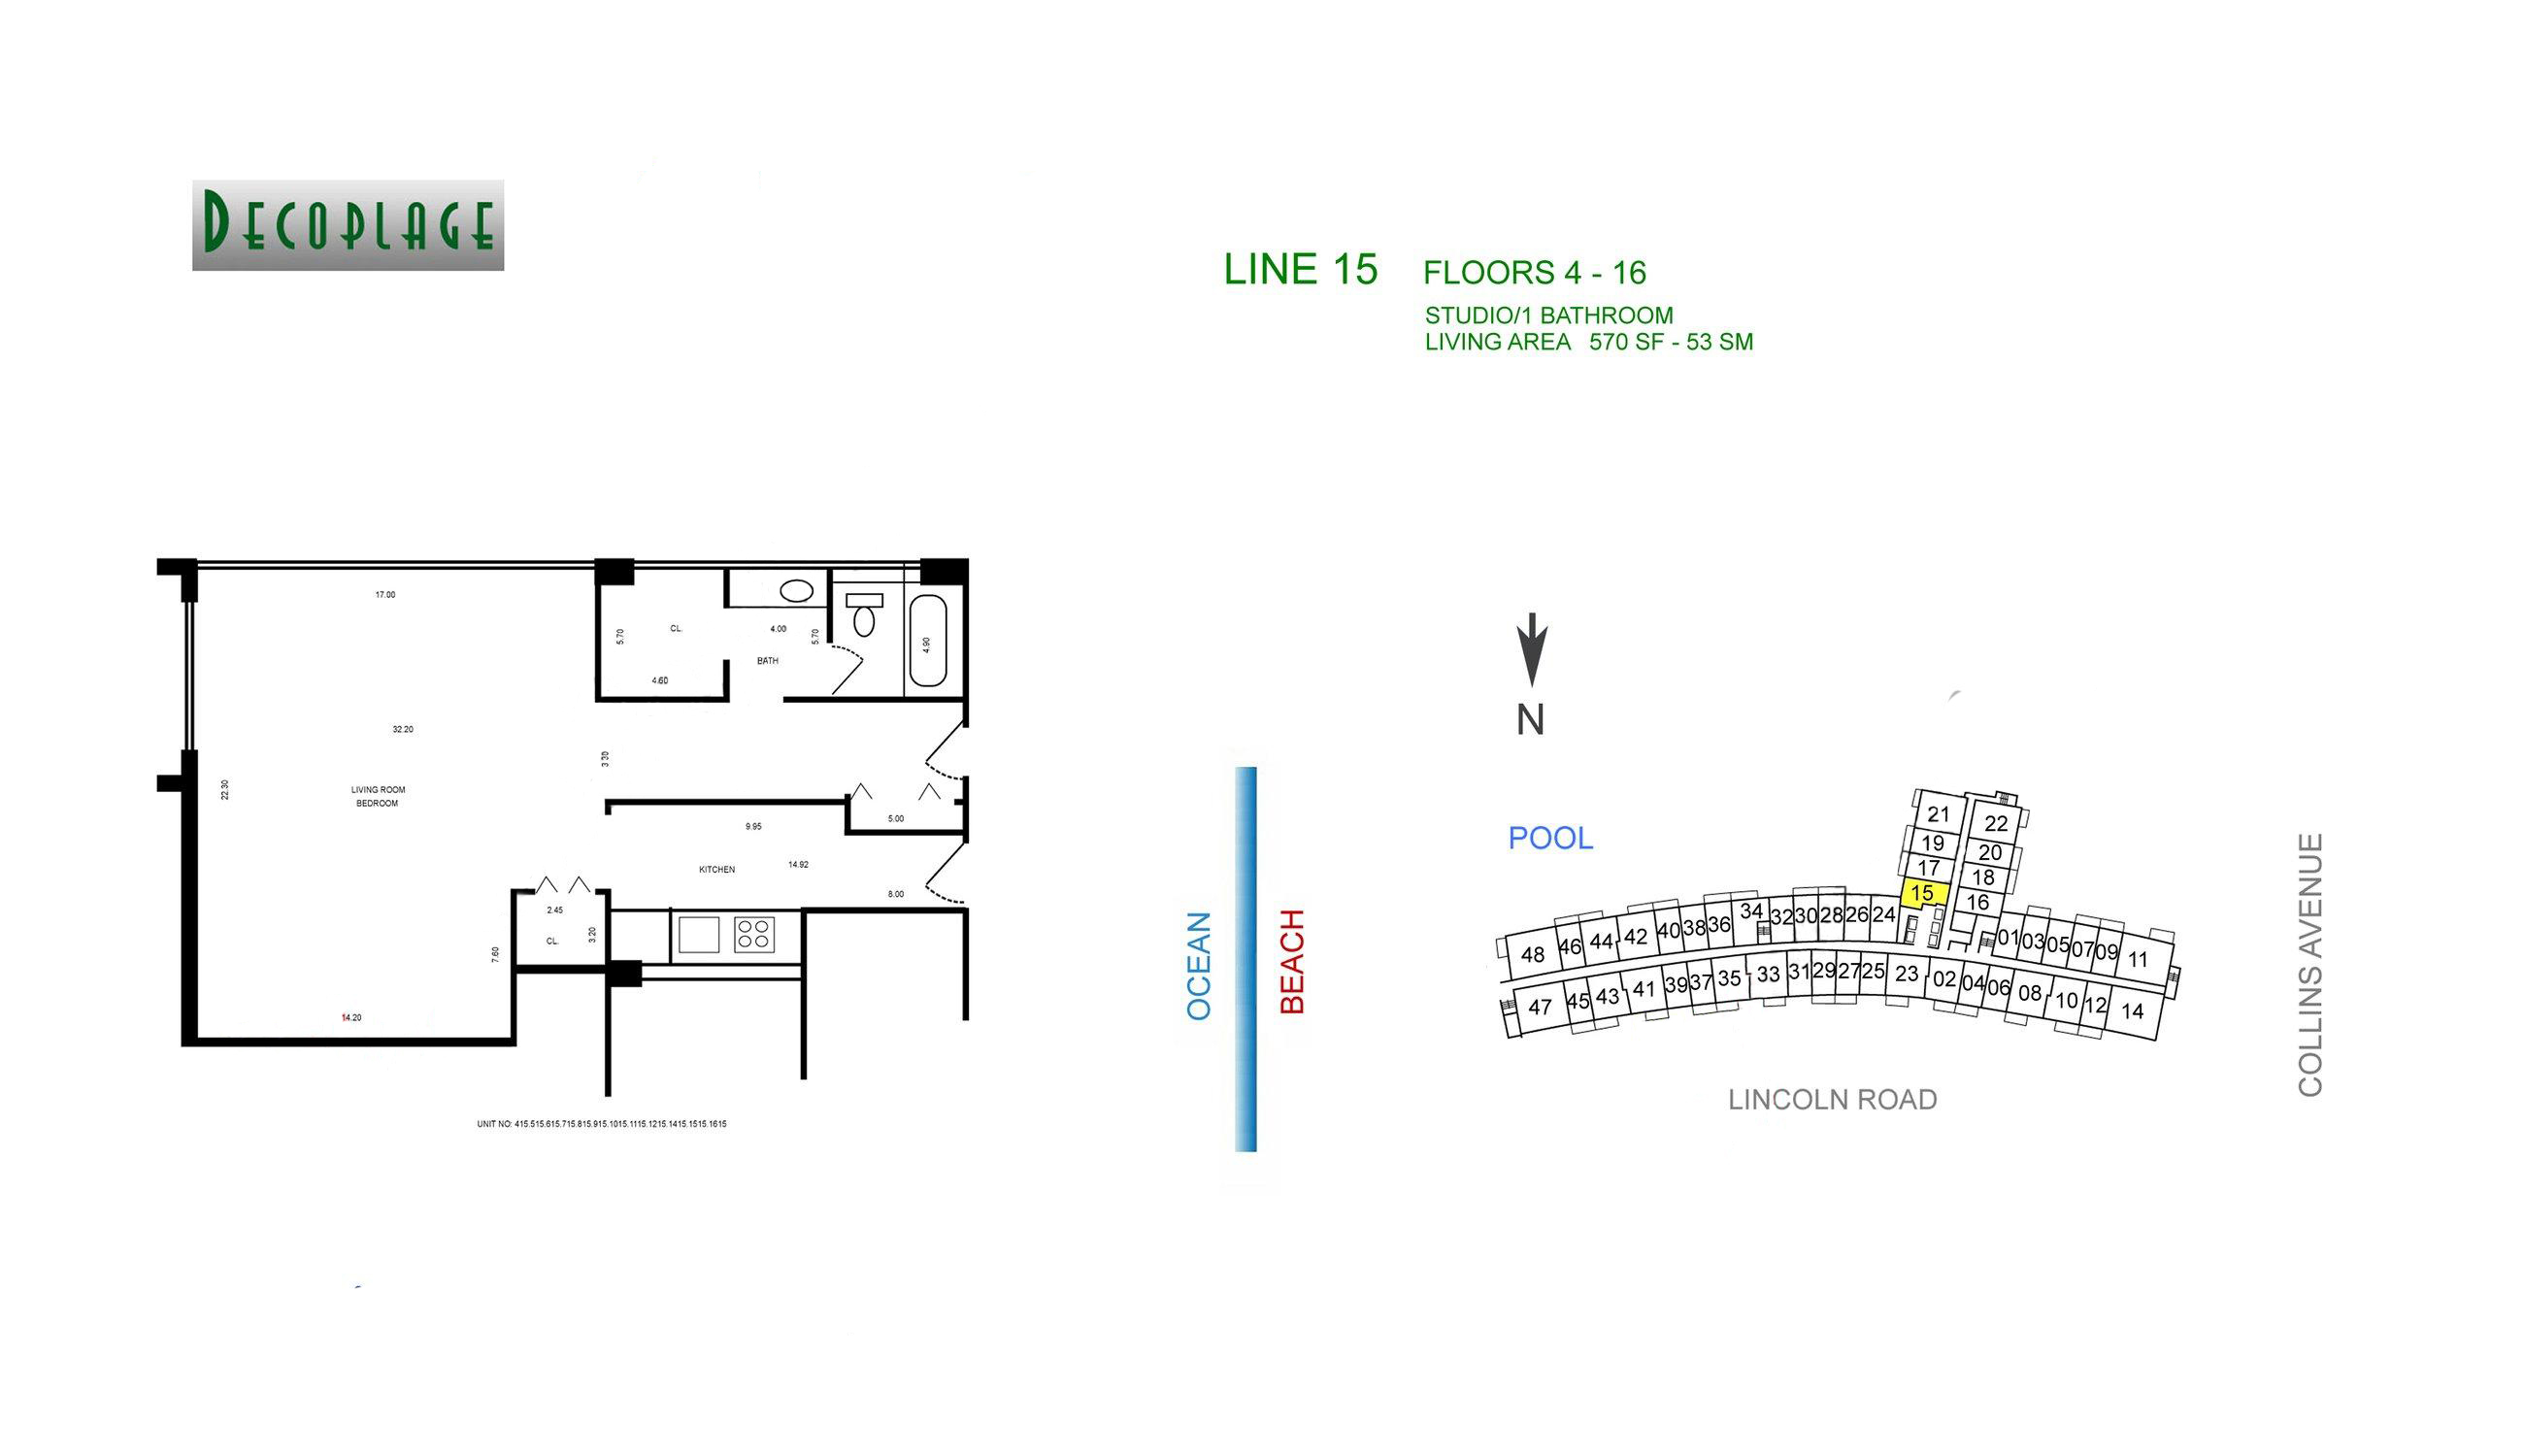 Decoplage Lines 15 Floors 3-16